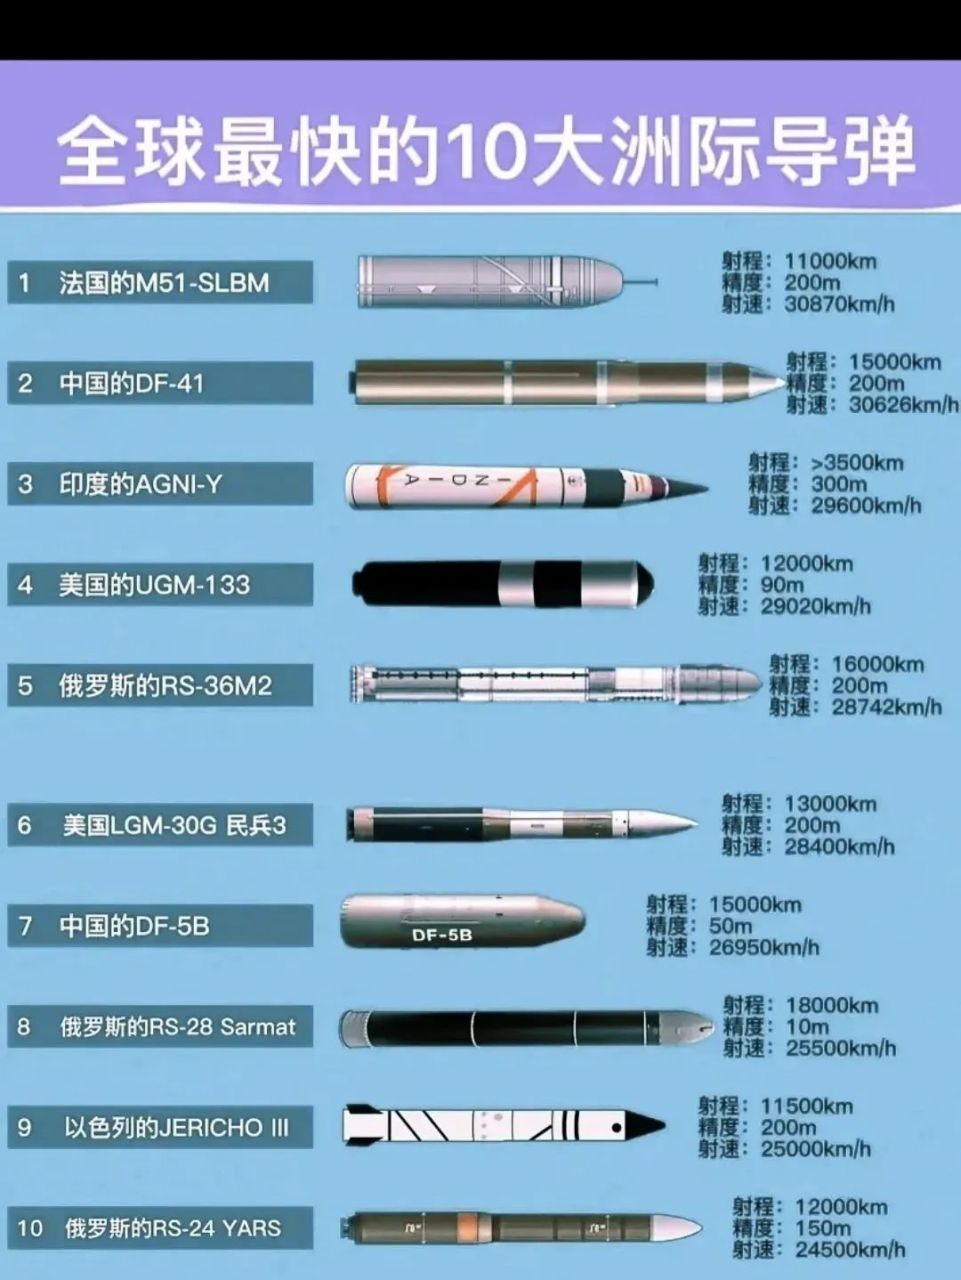 世界速度最快的十种洲际导弹 世界速度最快的前十种洲际弹道导弹,中国